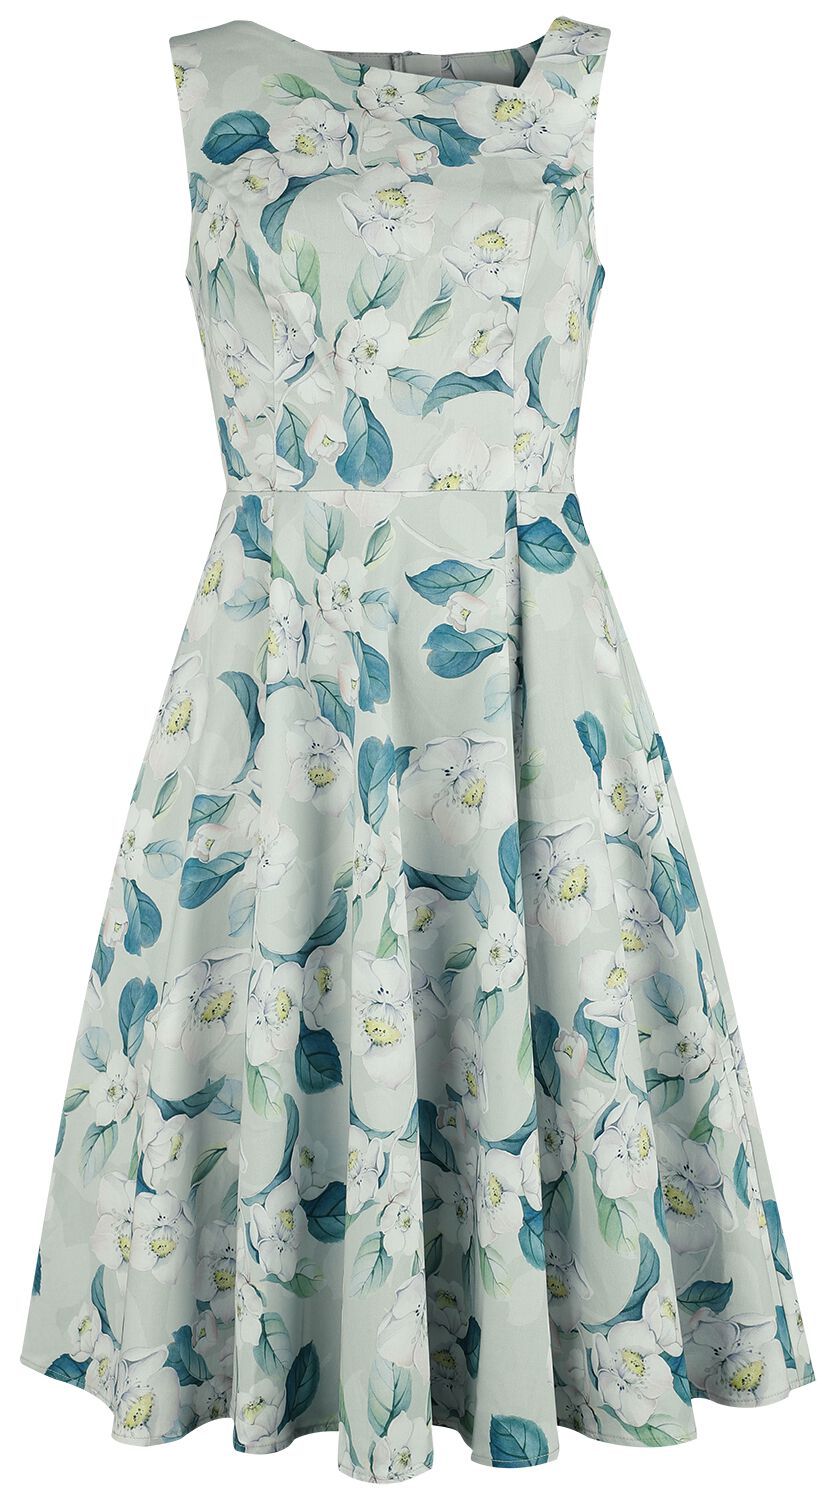 H&R London - Rockabilly Kleid knielang - Rey Floral Swing Dress - XS bis 4XL - für Damen - Größe XS - grün/weiß